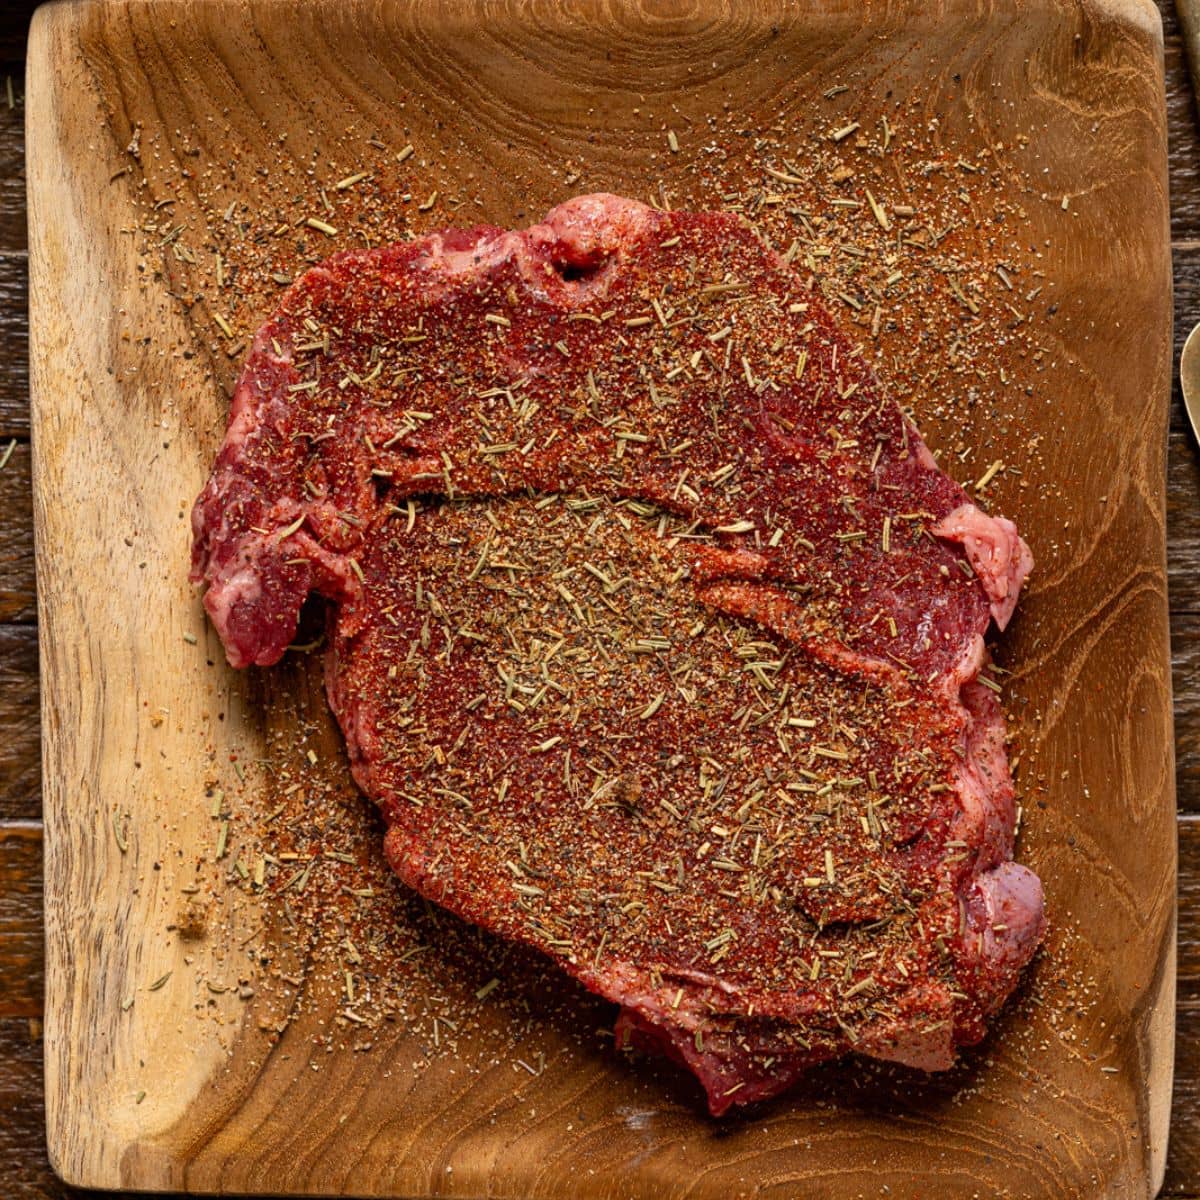 Seasoned steak on a brown wood plate.